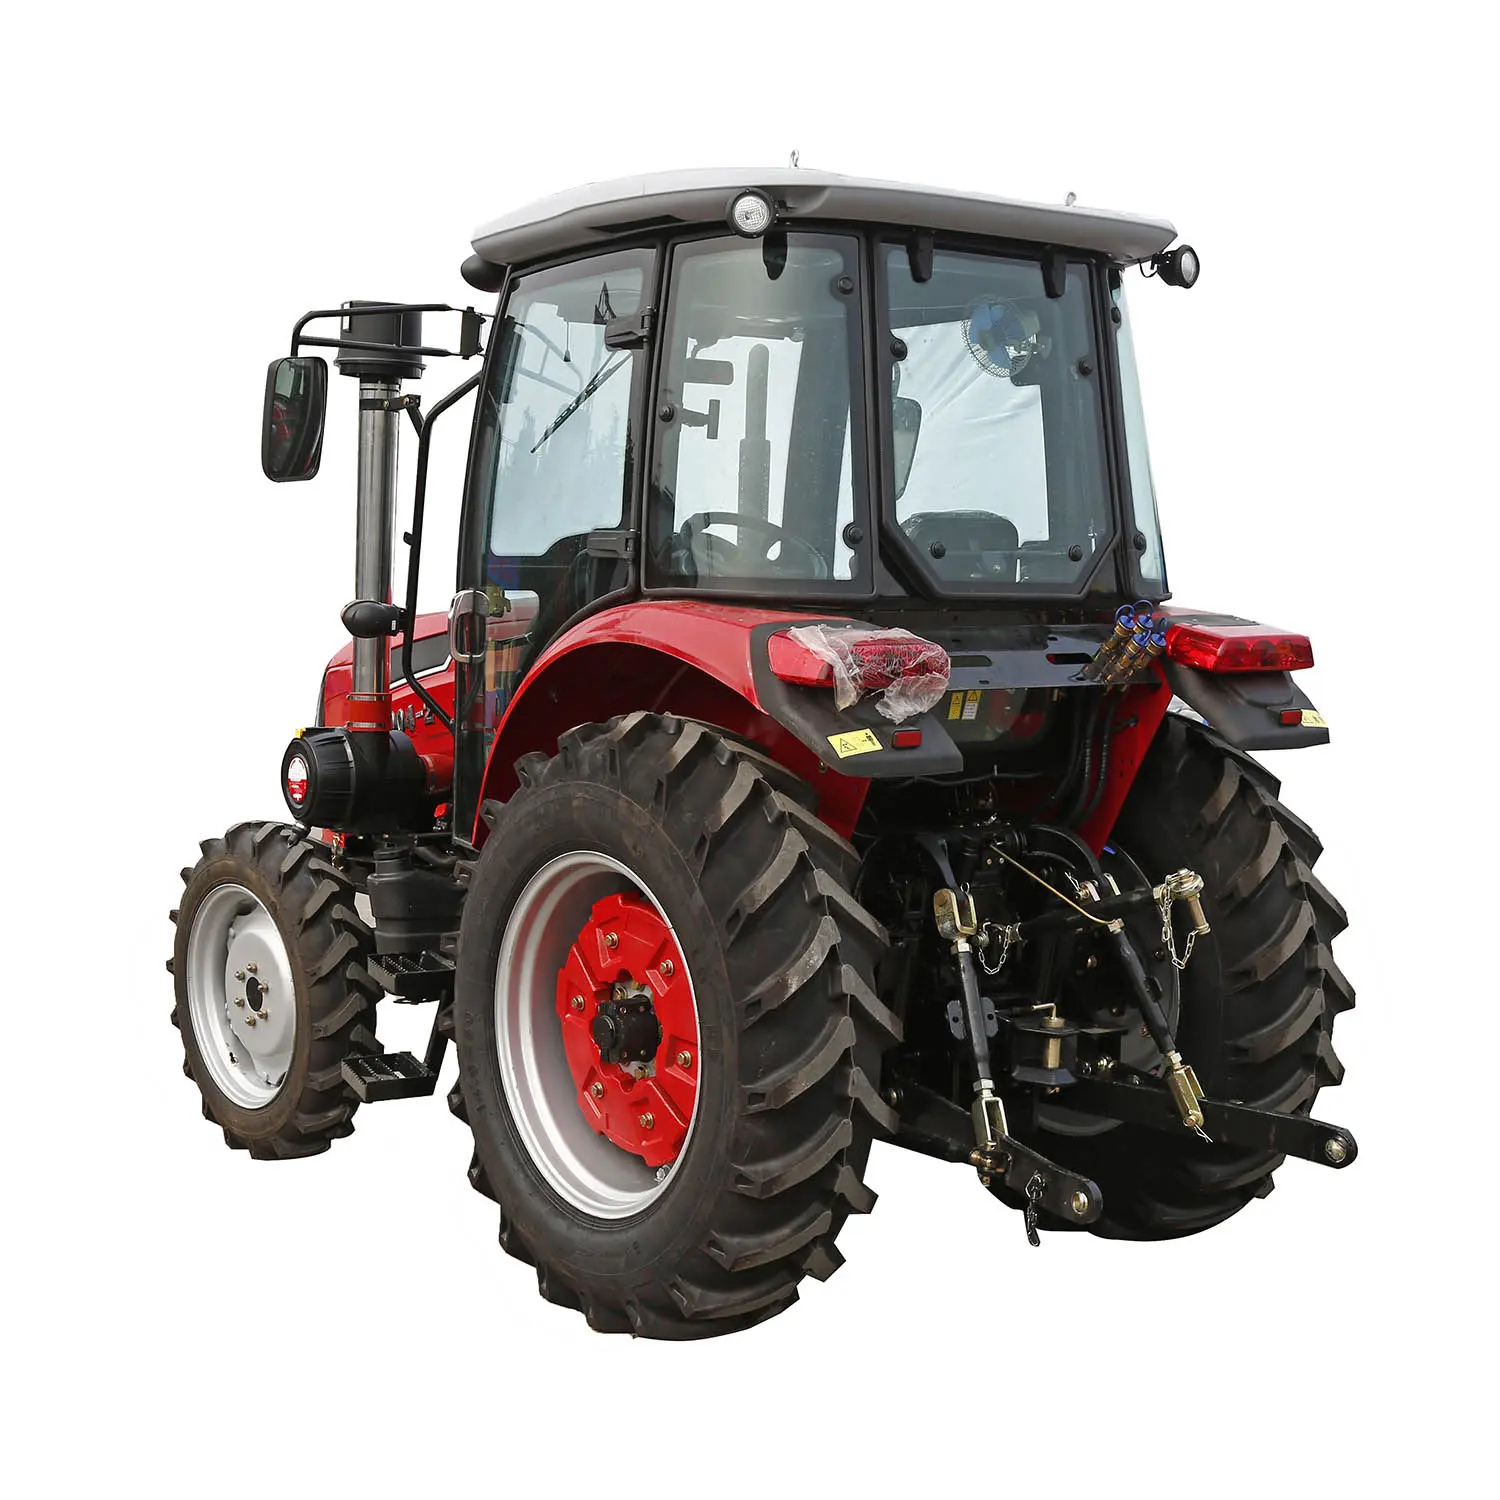 Сельскохозяйственный трактор kama 1304 4WD для продажи